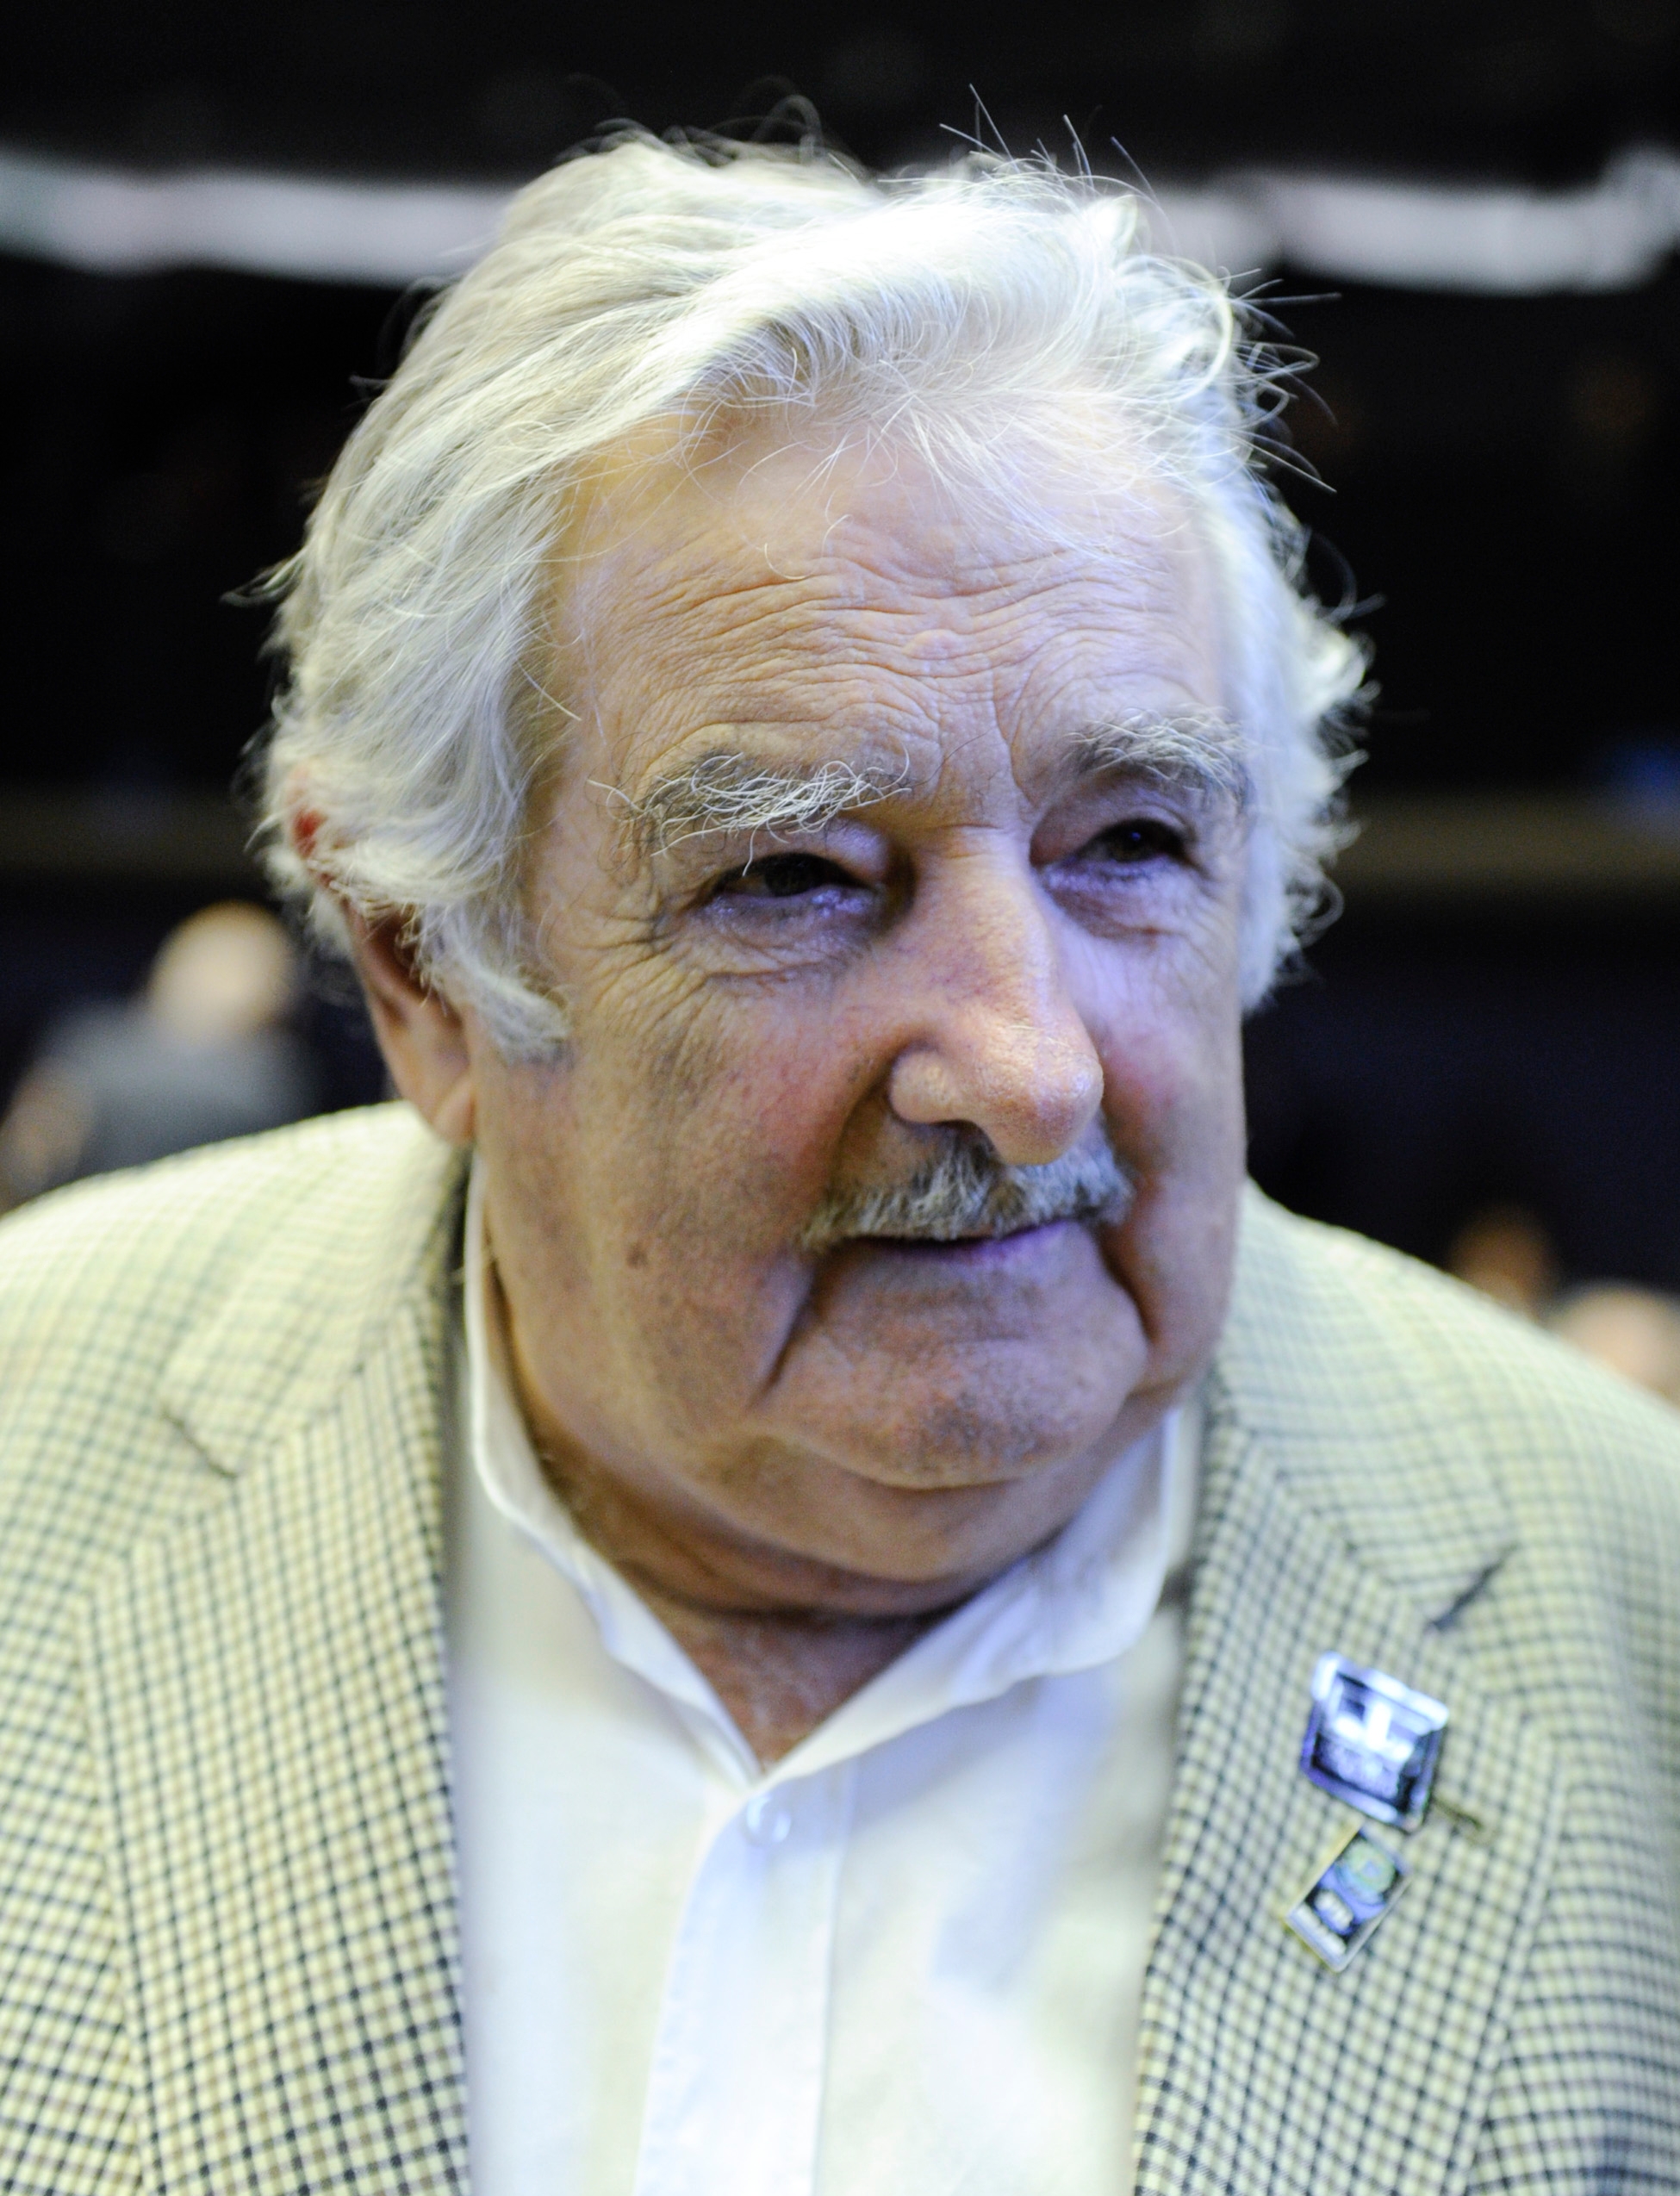 auteur Jose Mujica de la citation Pire encore, la drogue est un trafic de drogue. Bien pire. Les médicaments sont une maladie et je ne pense pas qu'il y ait de bons médicaments ou que la marijuana est bonne. Ni cigarettes. Aucune dépendance n'est bonne. J'inclus de l'alcool. La seule bonne dépendance est l'amour. Oubliez tout le reste.